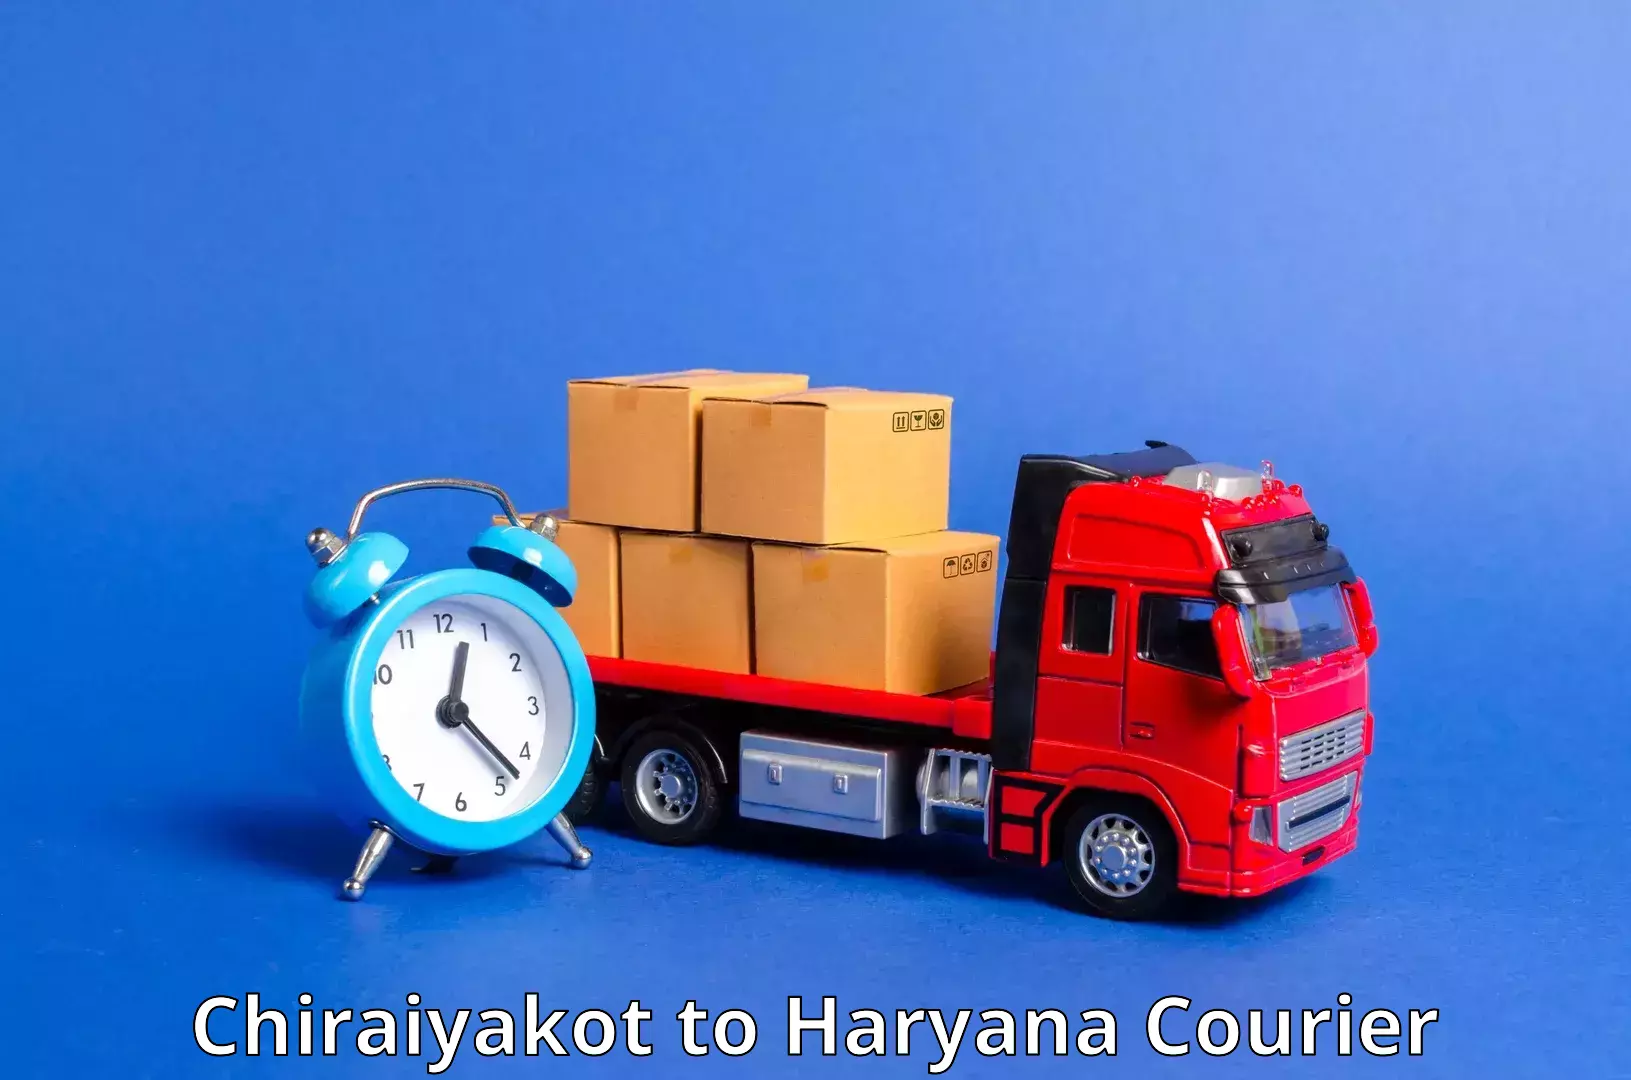 Logistics service provider Chiraiyakot to Haryana